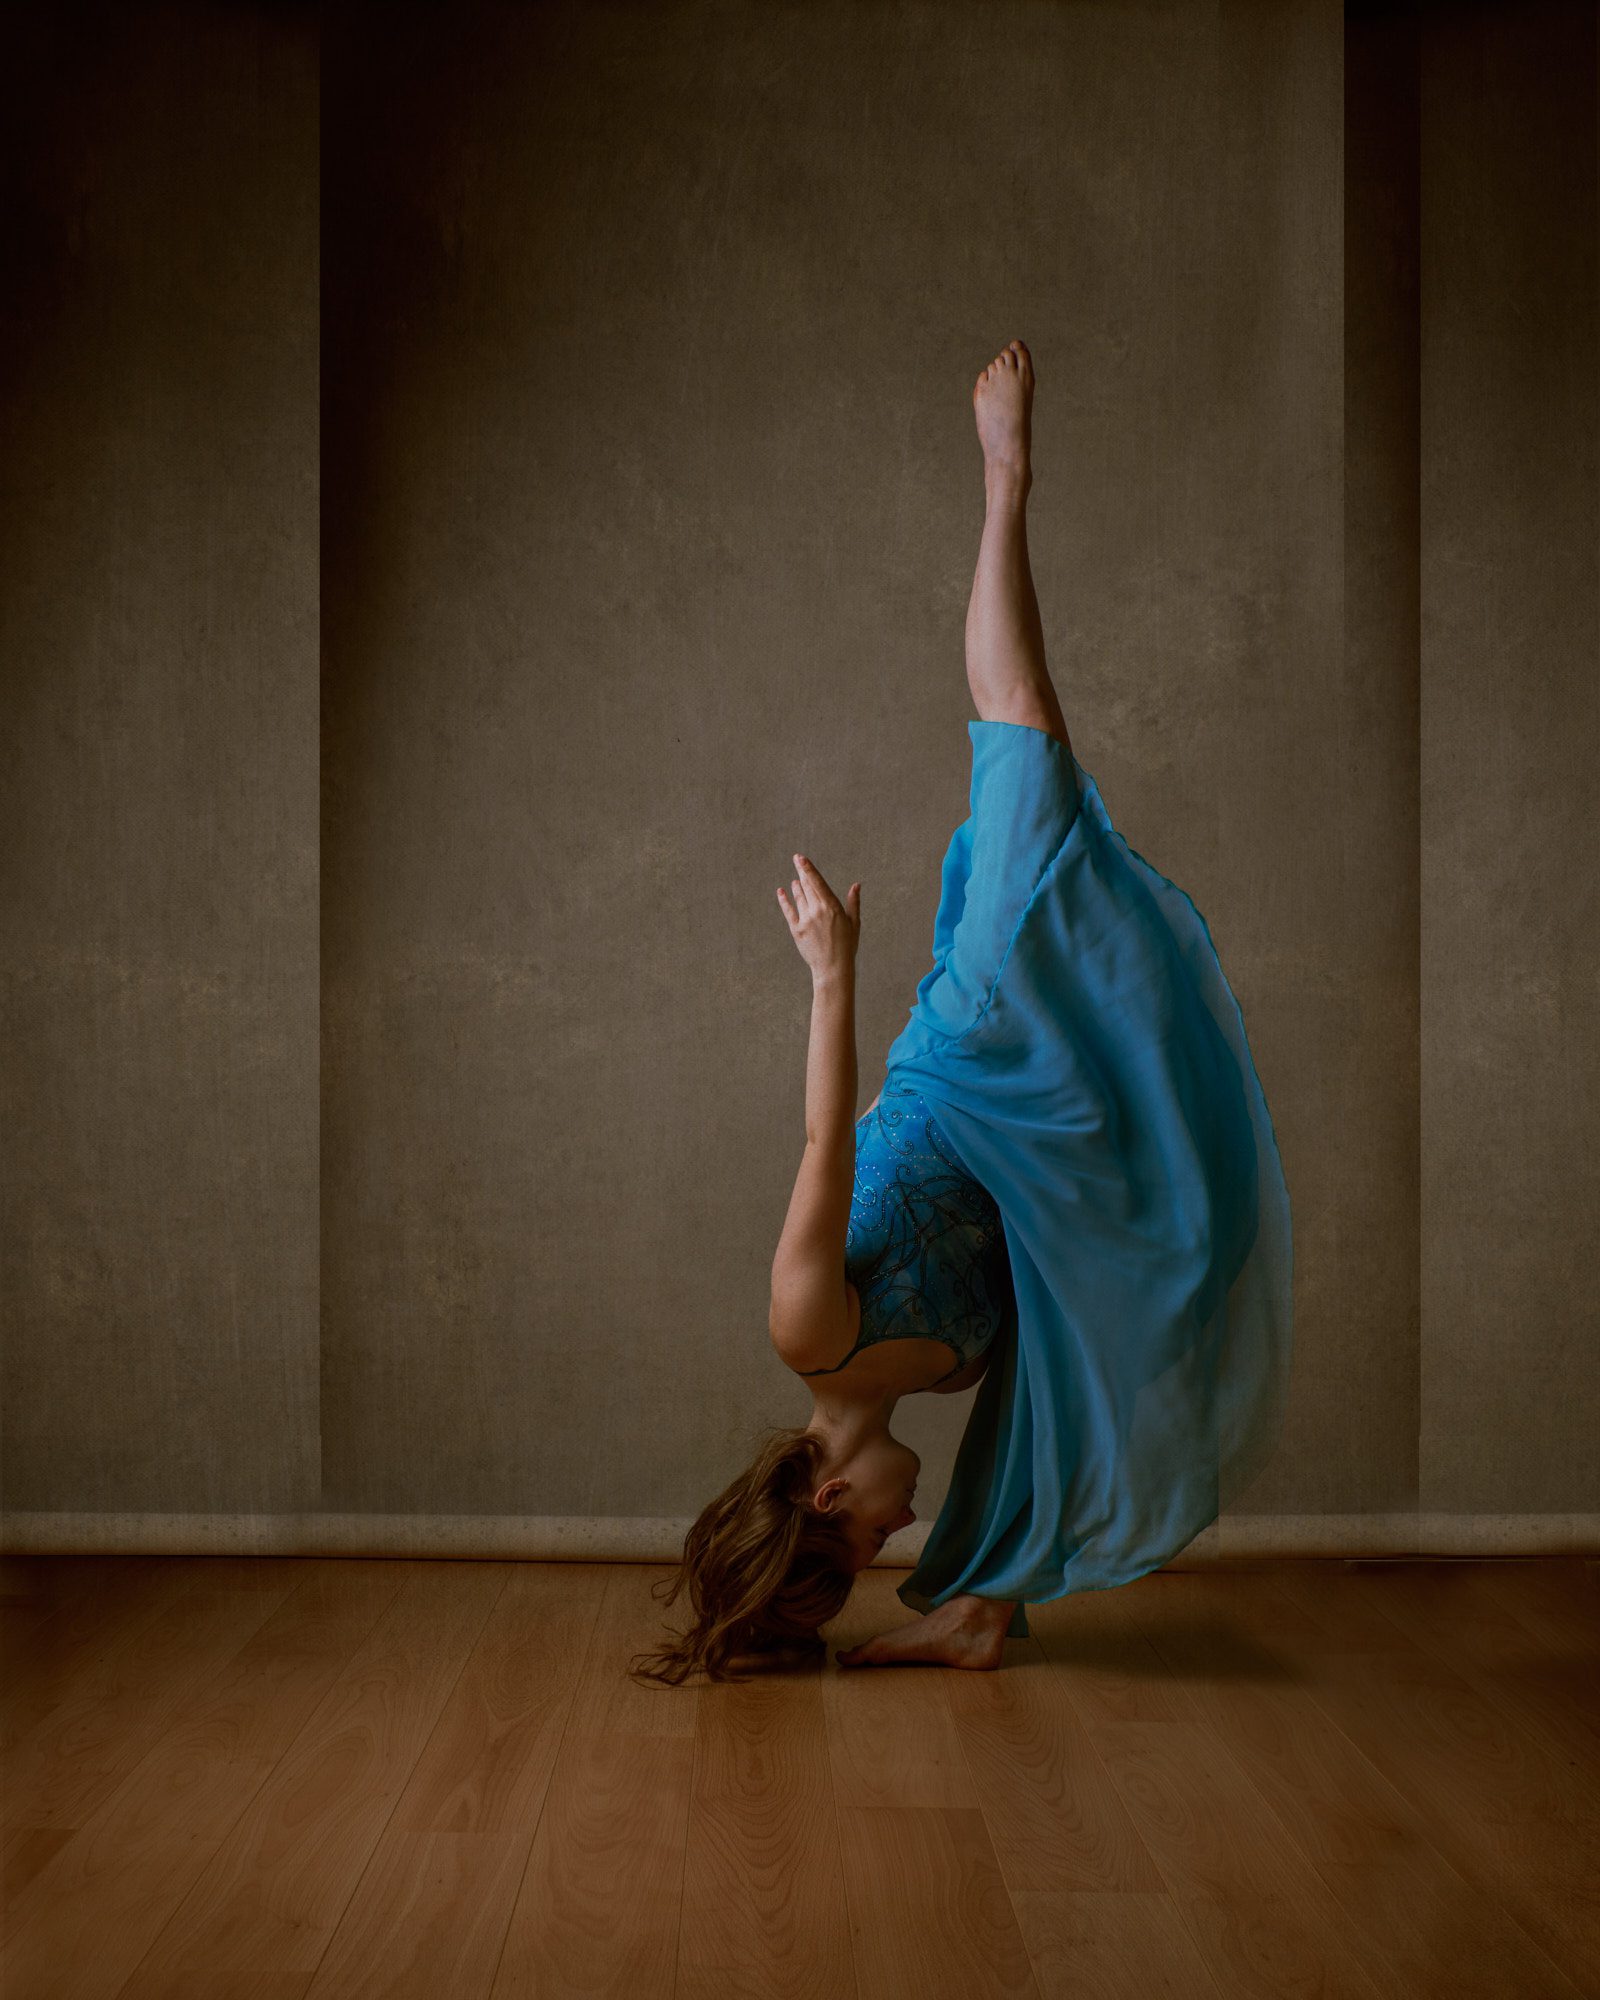 Dancer in a high leg pose wearing a blue dress